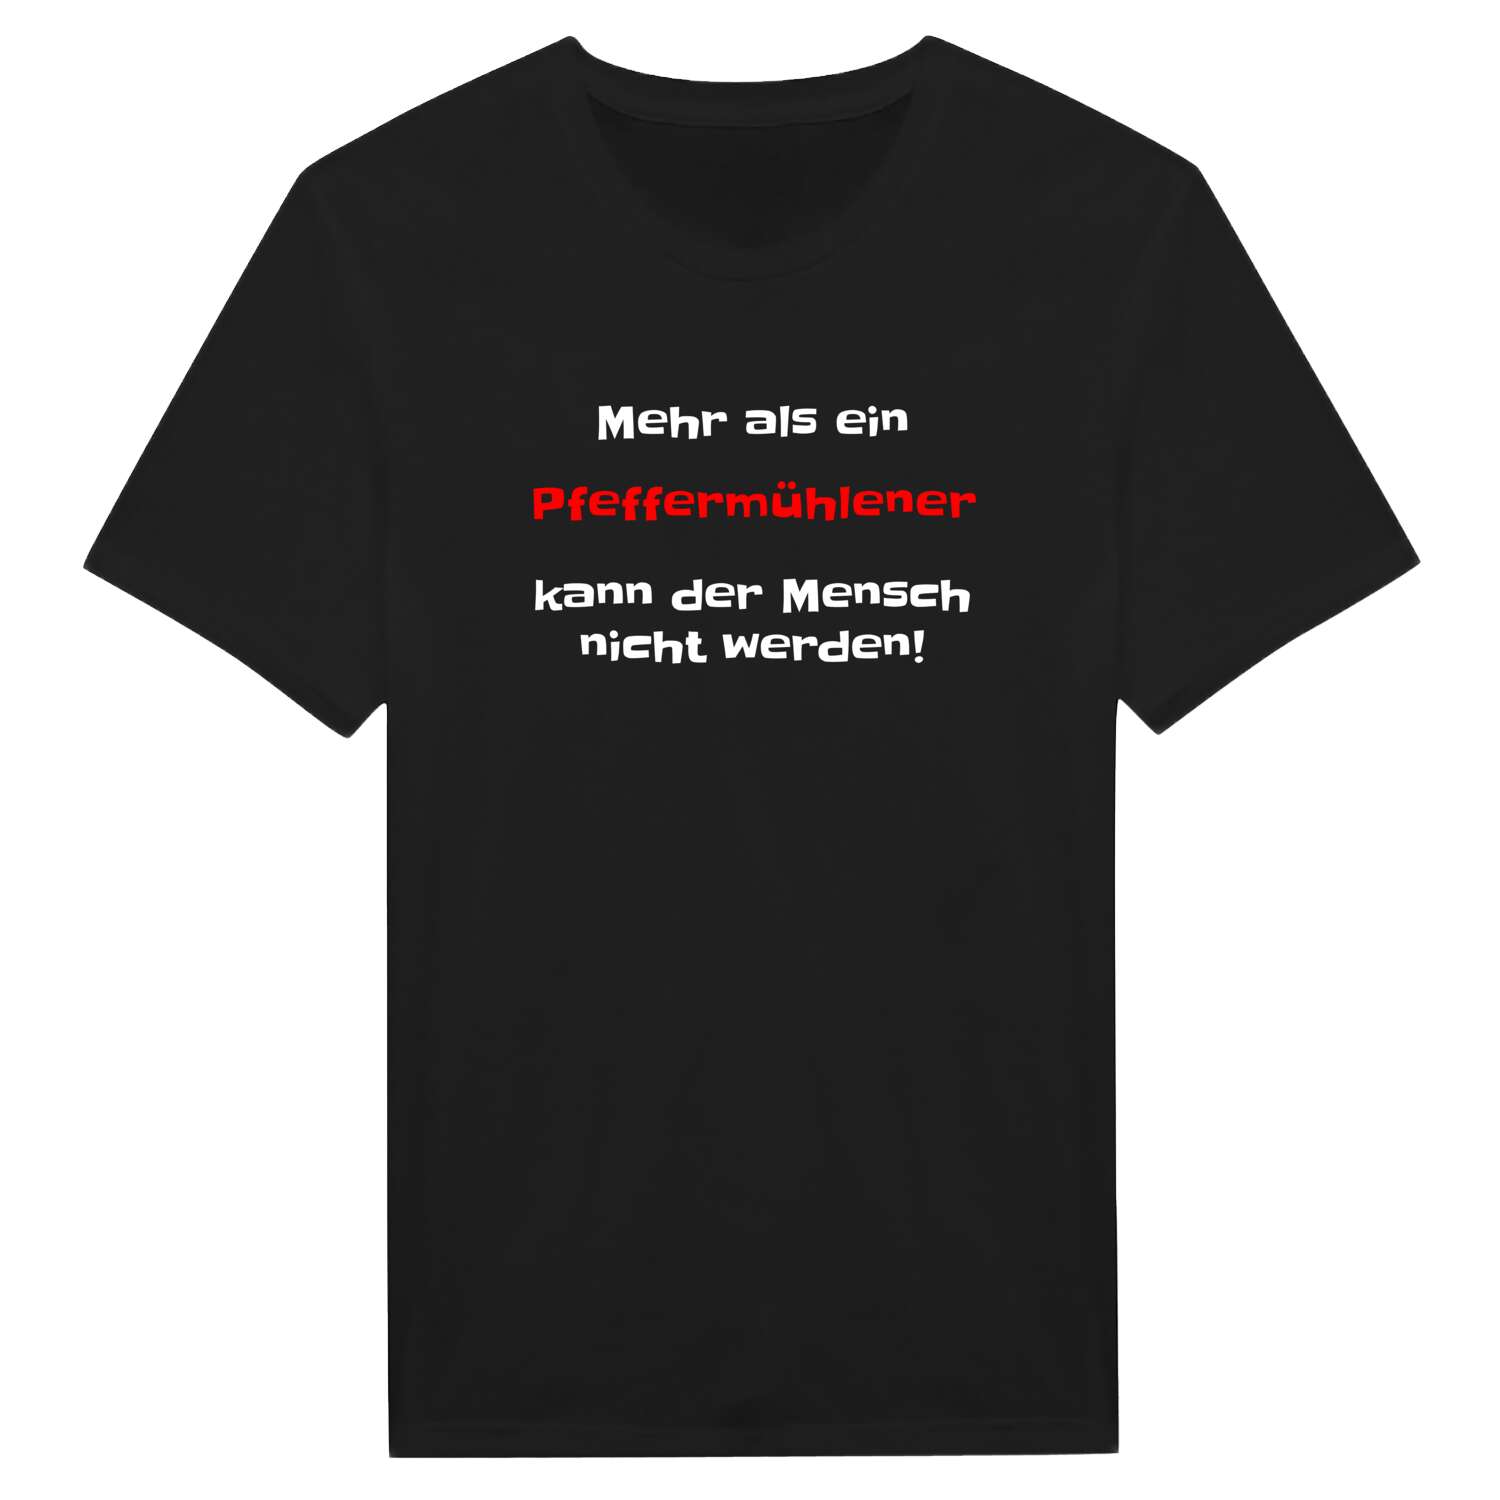 Pfeffermühle T-Shirt »Mehr als ein«